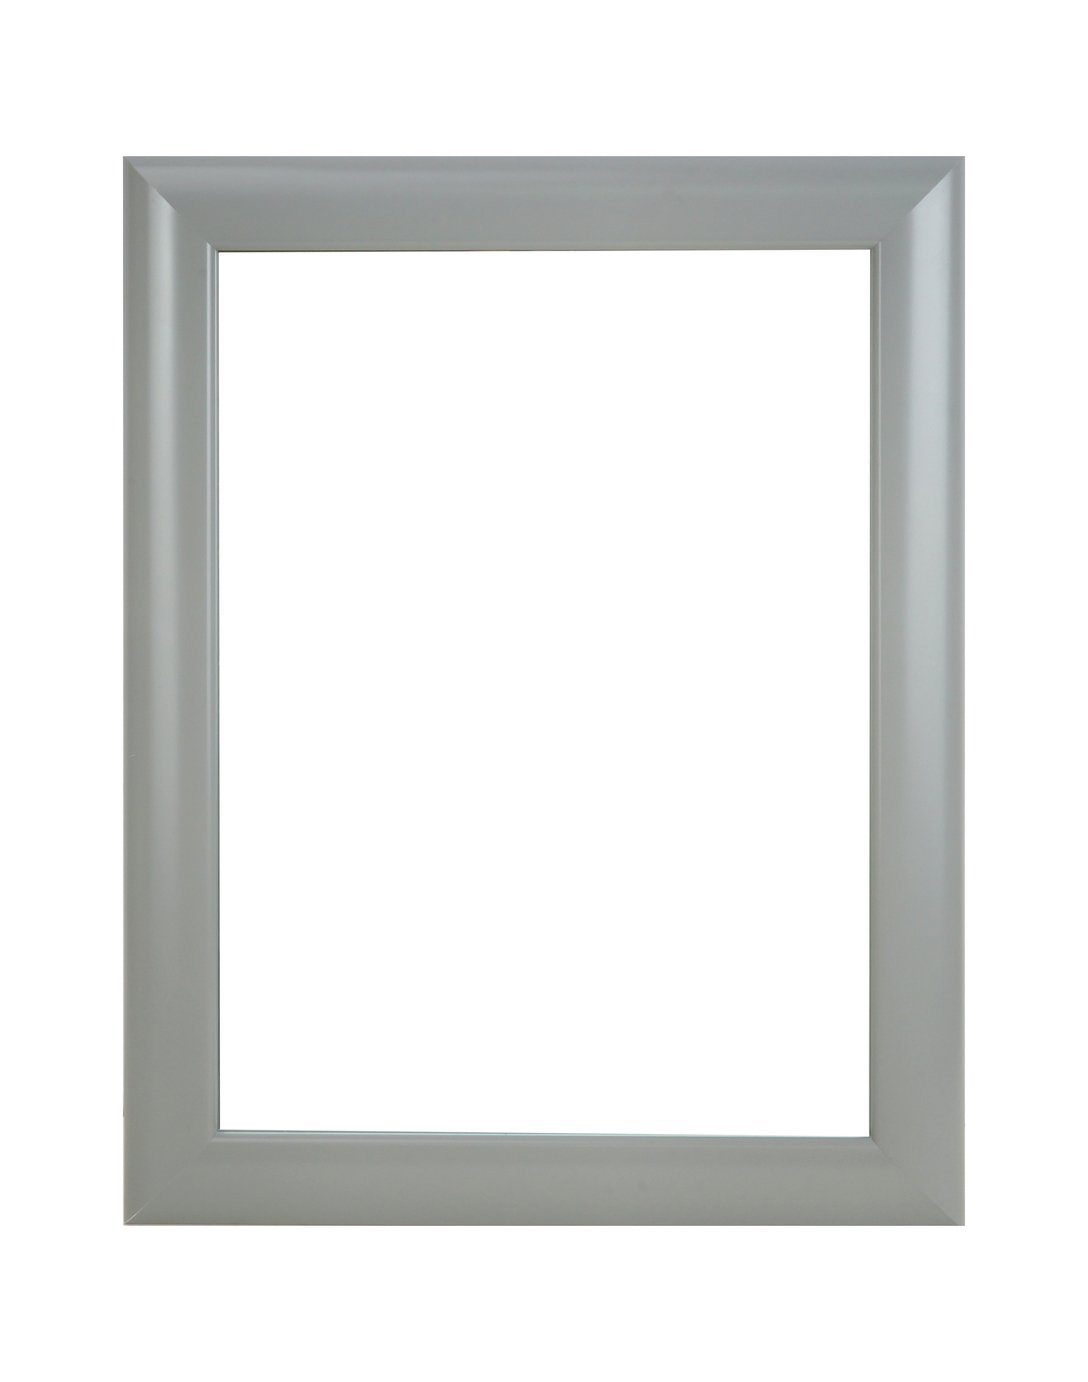 Argos Home Framed Wall Mirror - Grey - 37x47cm